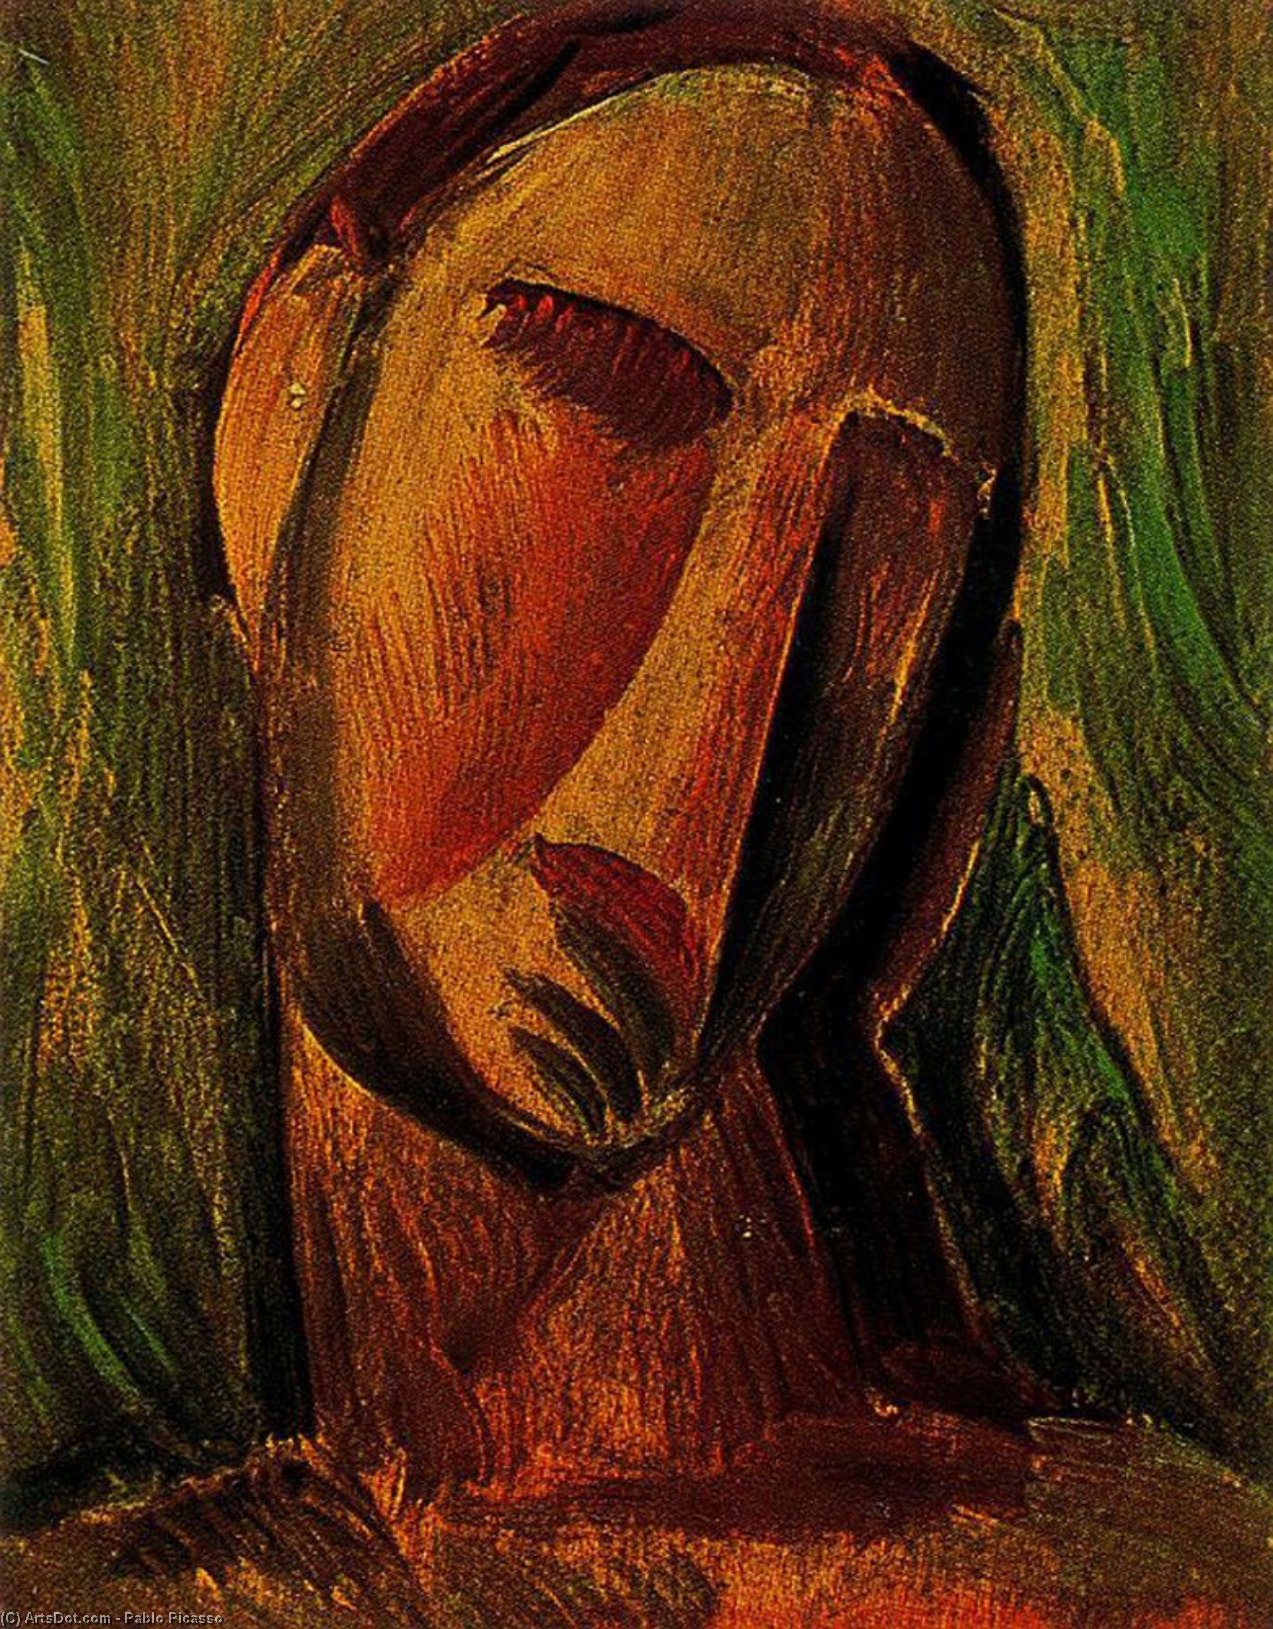 WikiOO.org - Энциклопедия изобразительного искусства - Живопись, Картины  Pablo Picasso - Голова женщины 7